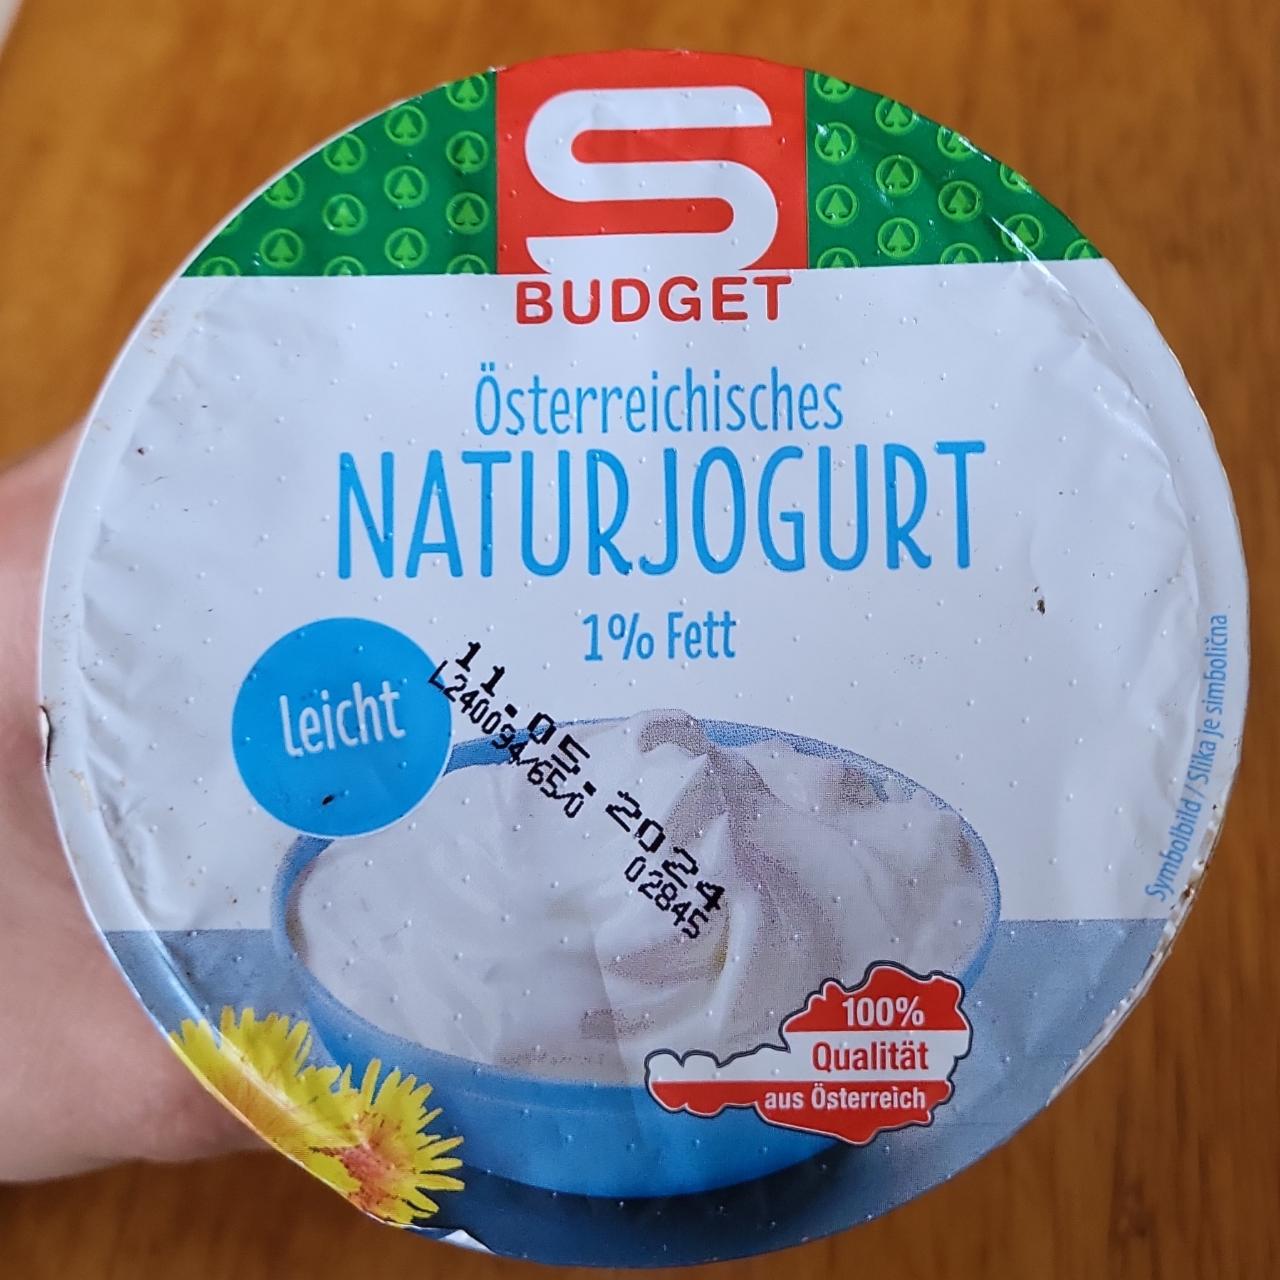 Képek - Österreichisches naturjoghurt 1% Fett S Budget